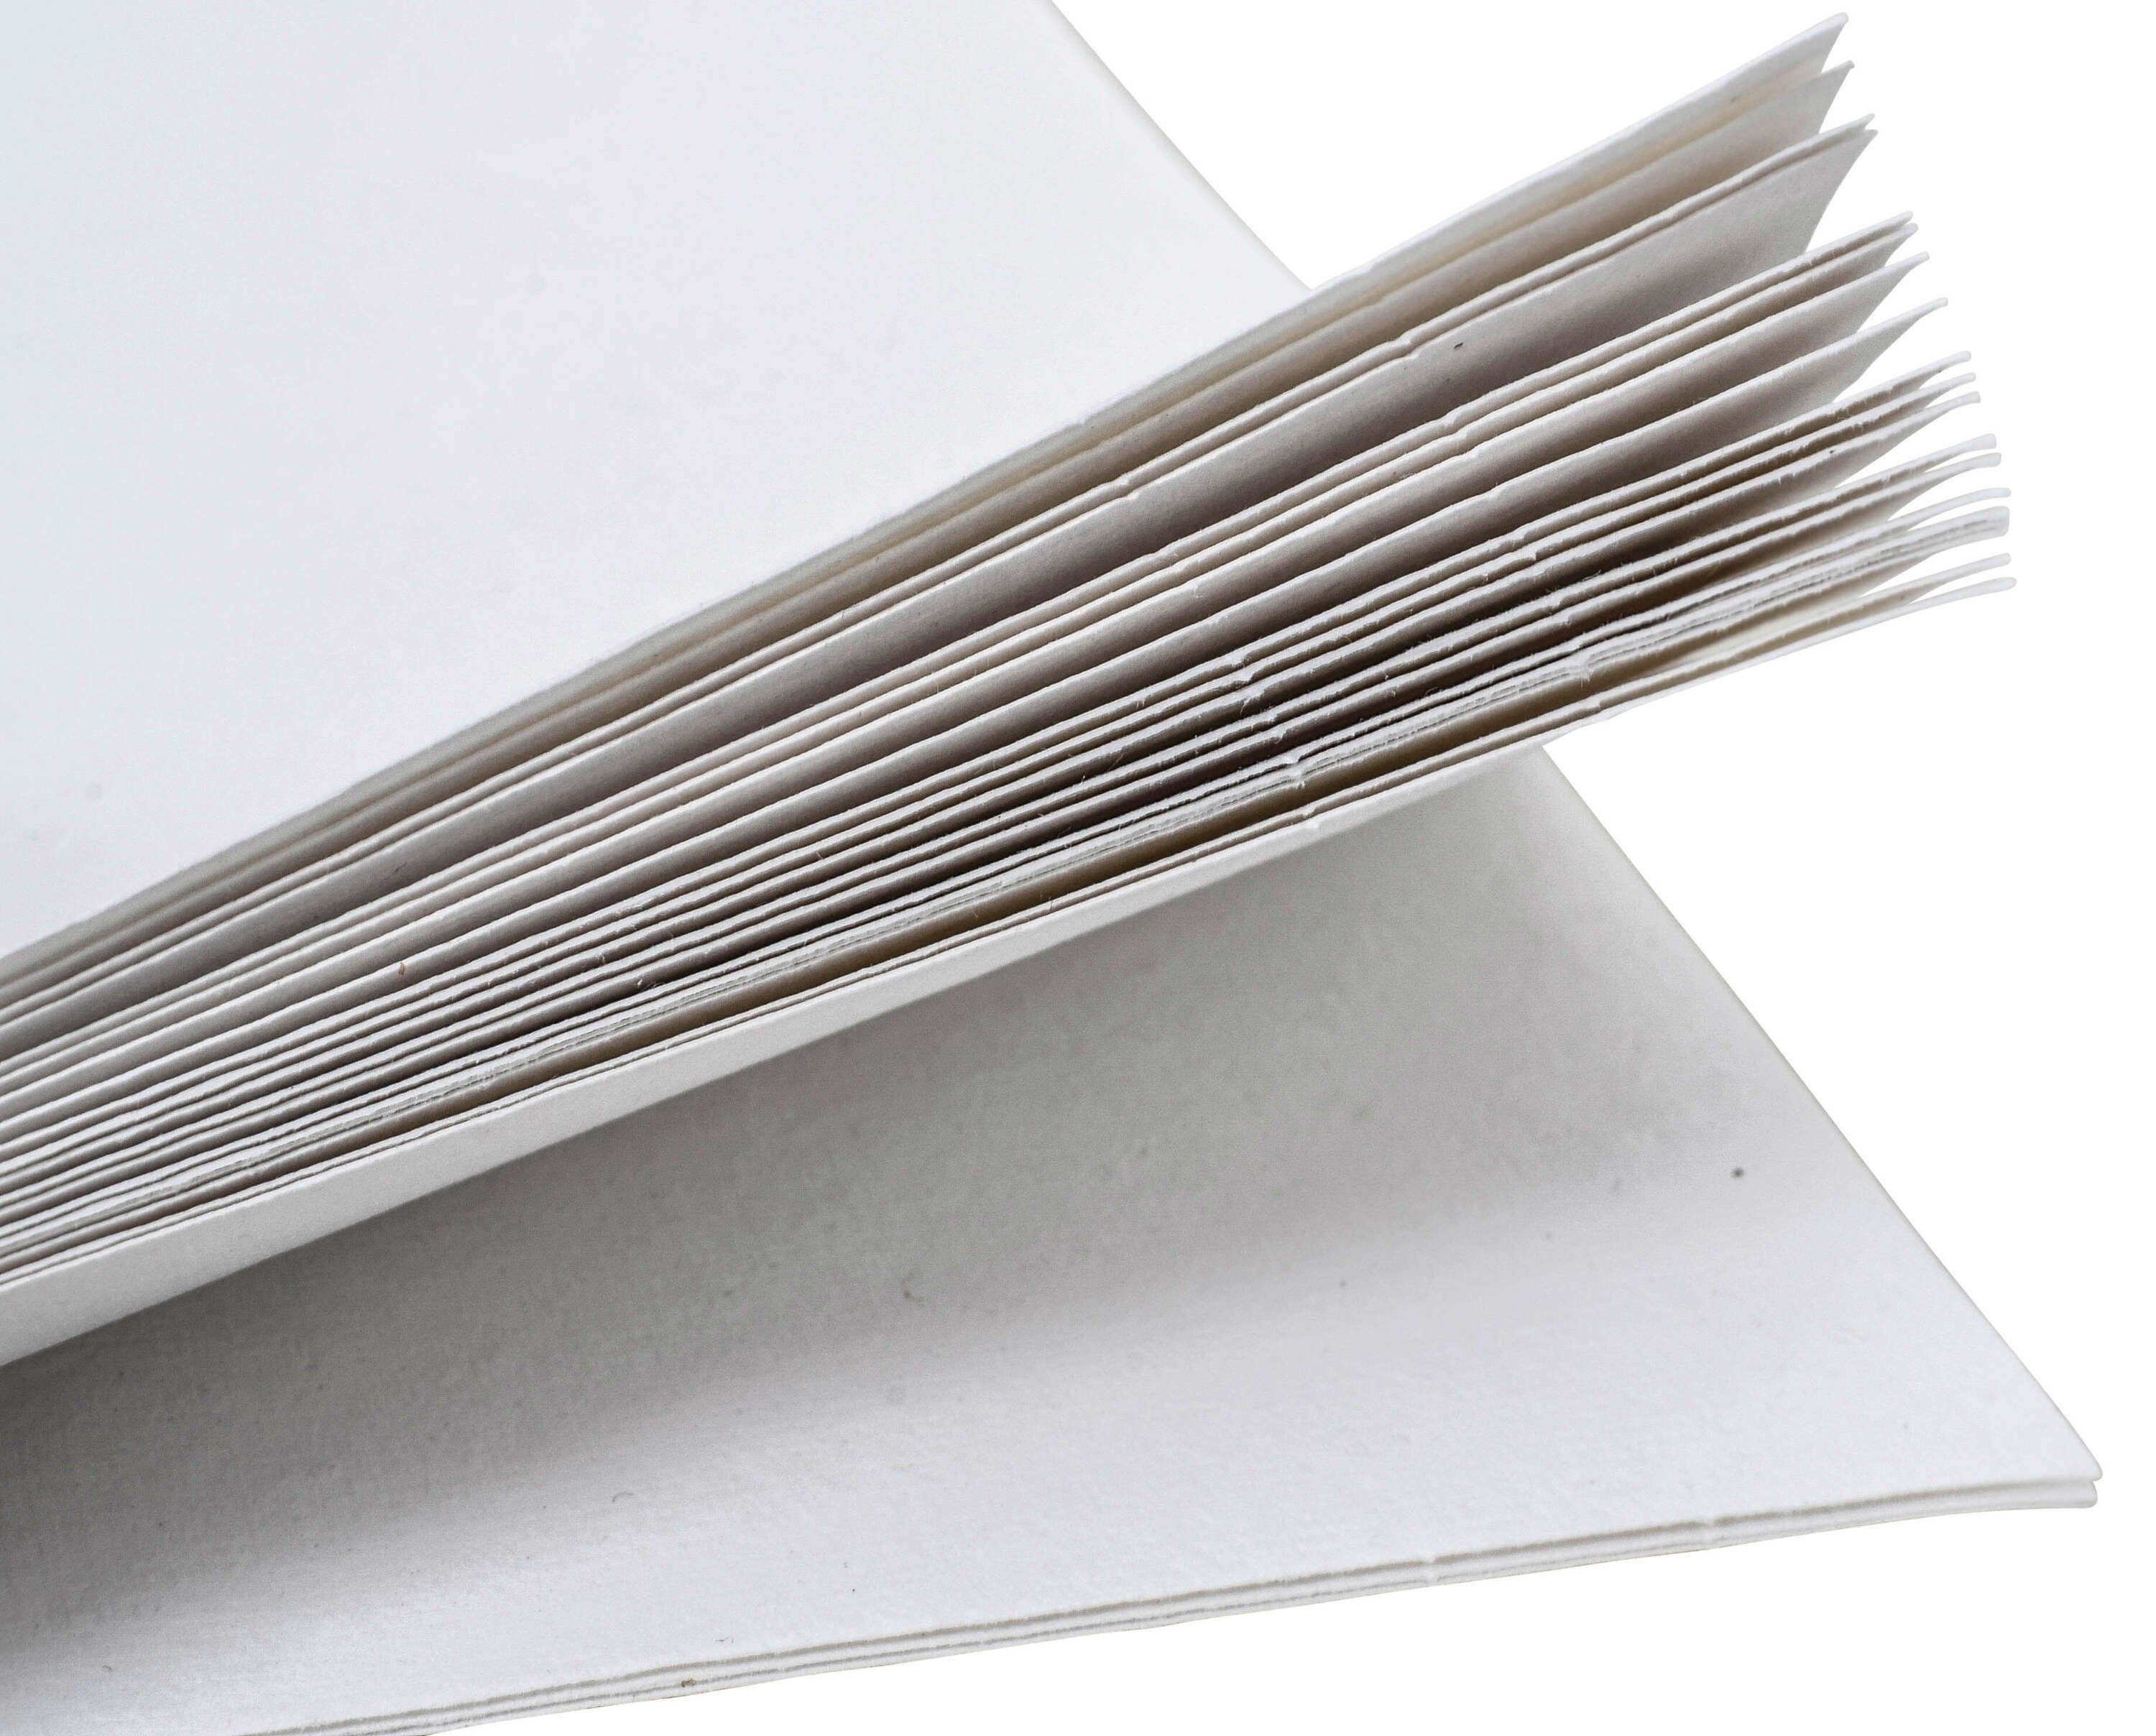 Bucheinlage Naturpapier DIN-A4 Asterix, Blanko Naturpapier -Inlay Gusti Papier Briefpapier Leder A5 5er Set